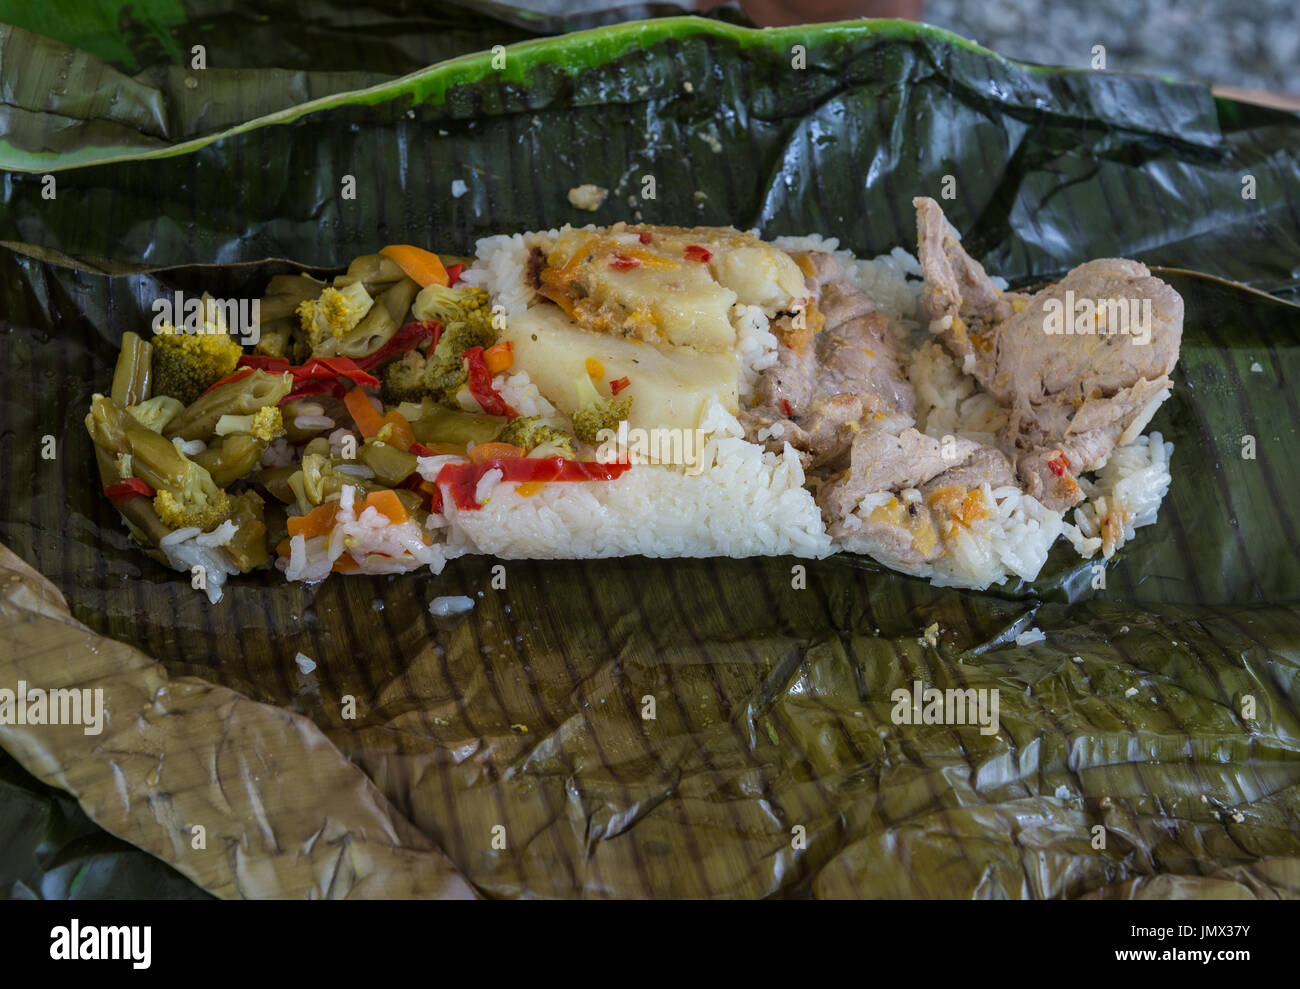 Feuille de bananier enveloppé le riz et la farine de poulet. La Colombie, l'Amérique du Sud. Banque D'Images